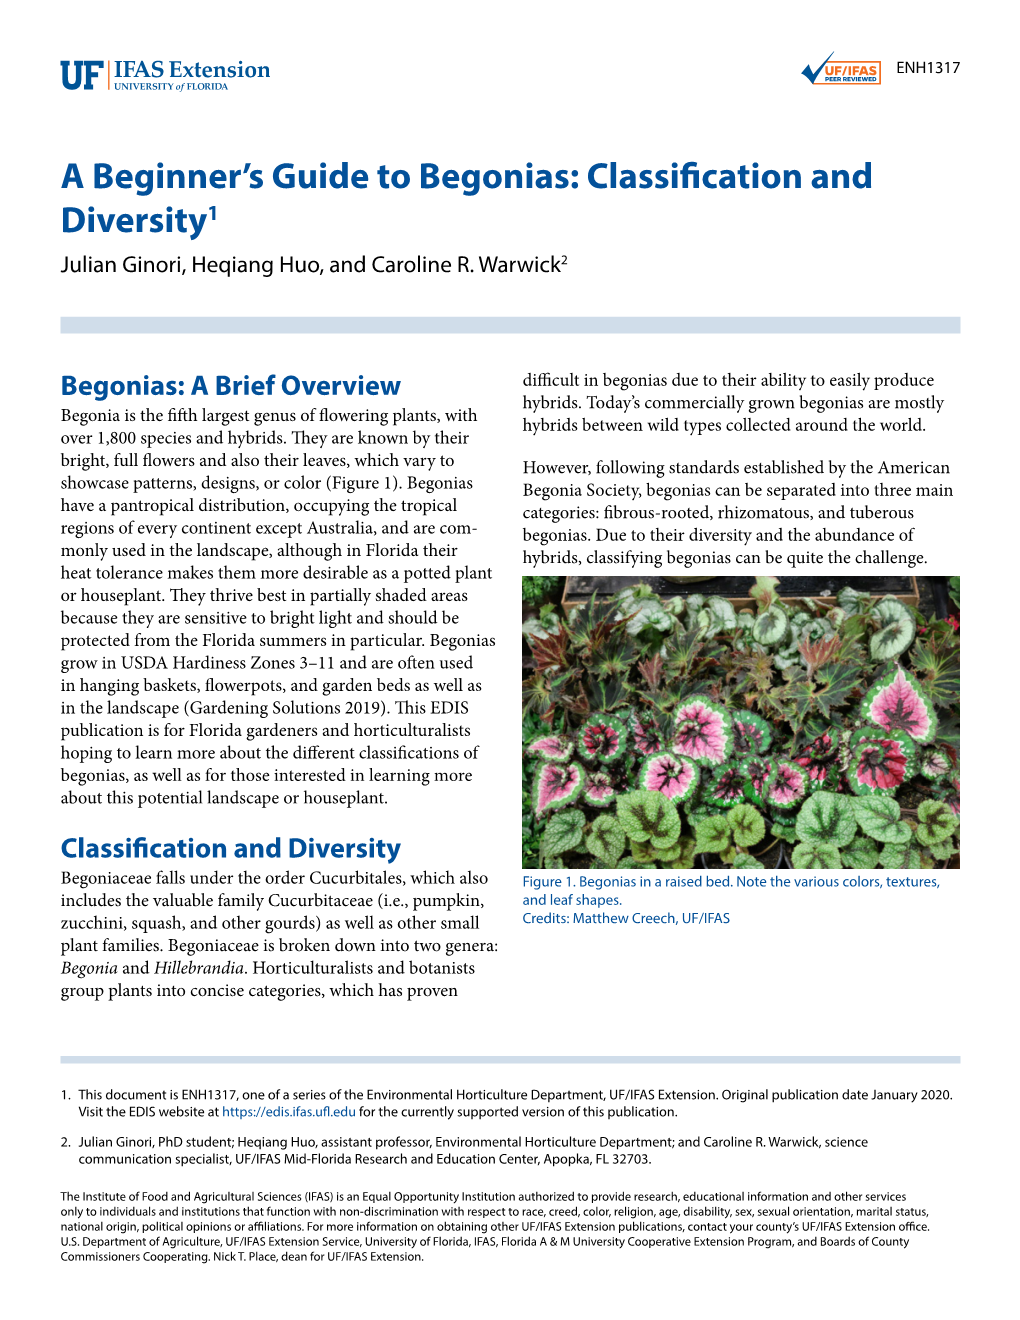 Begonias: Classification and Diversity1 Julian Ginori, Heqiang Huo, and Caroline R